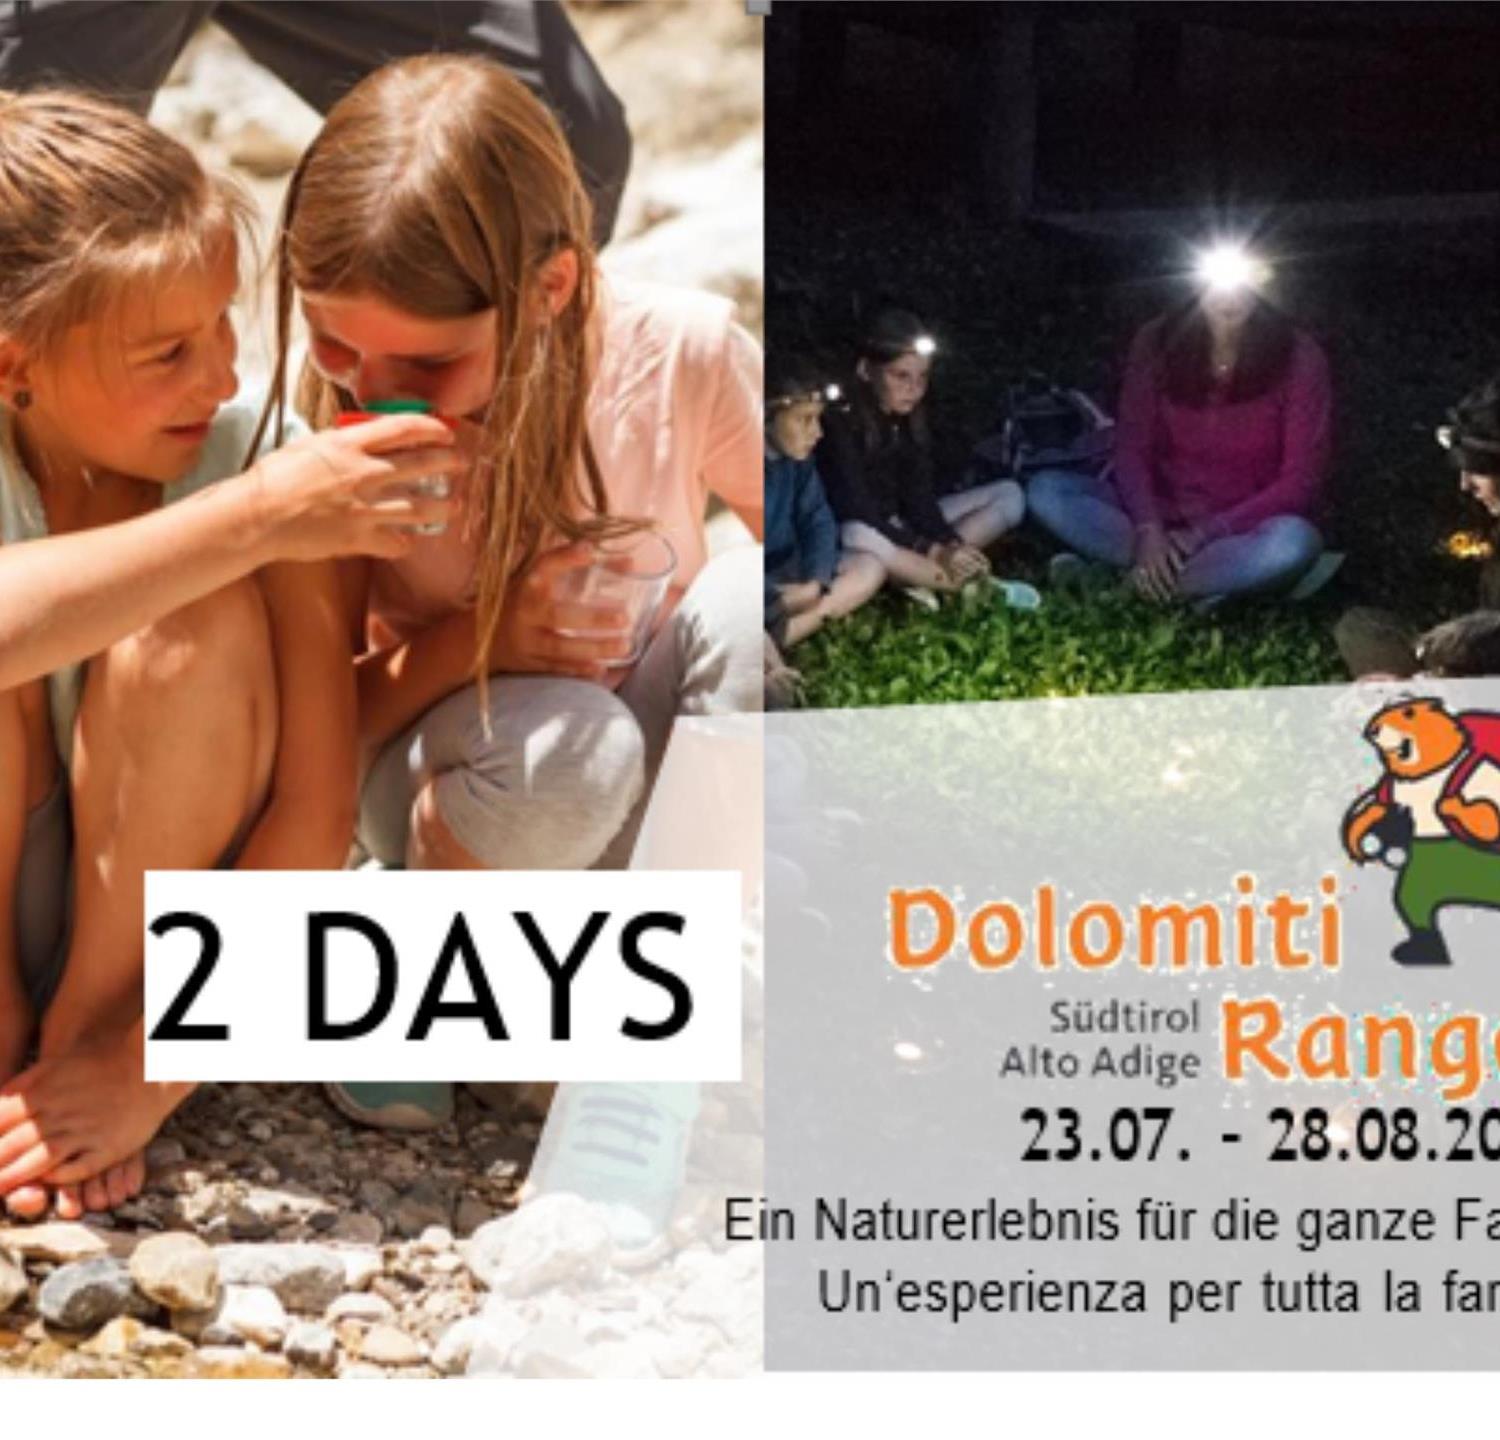 Foto für Dolomiti Ranger: 2 Tagespaket (Dienstag + Mittwoch)